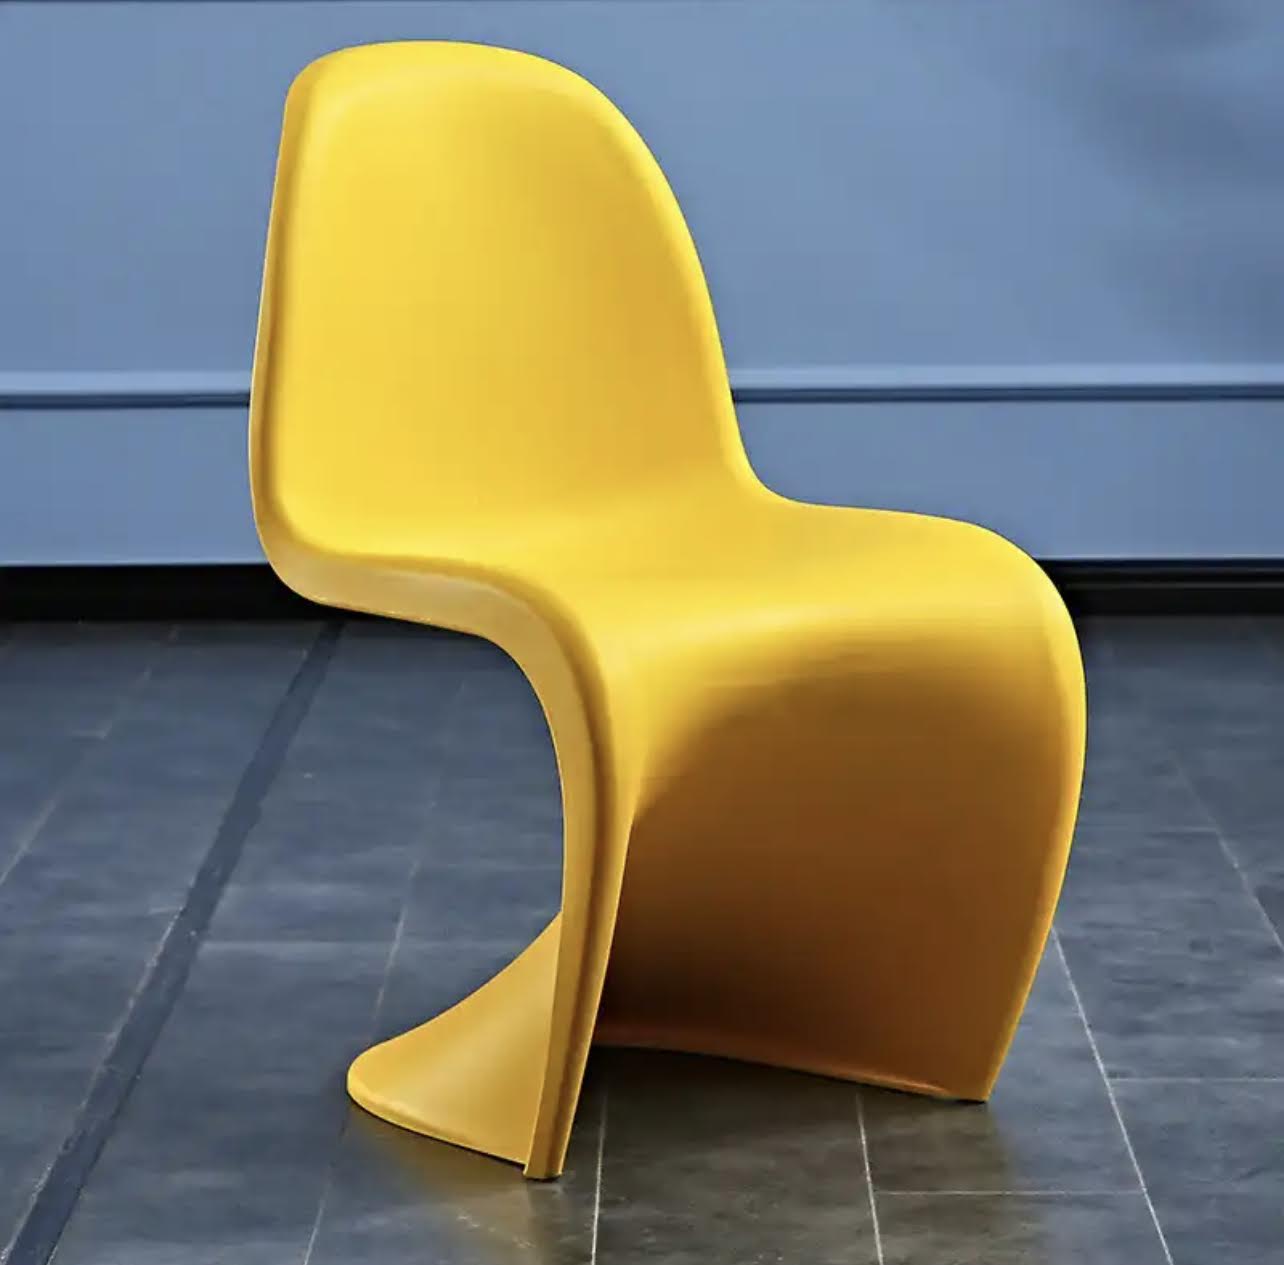 The Modern Chair